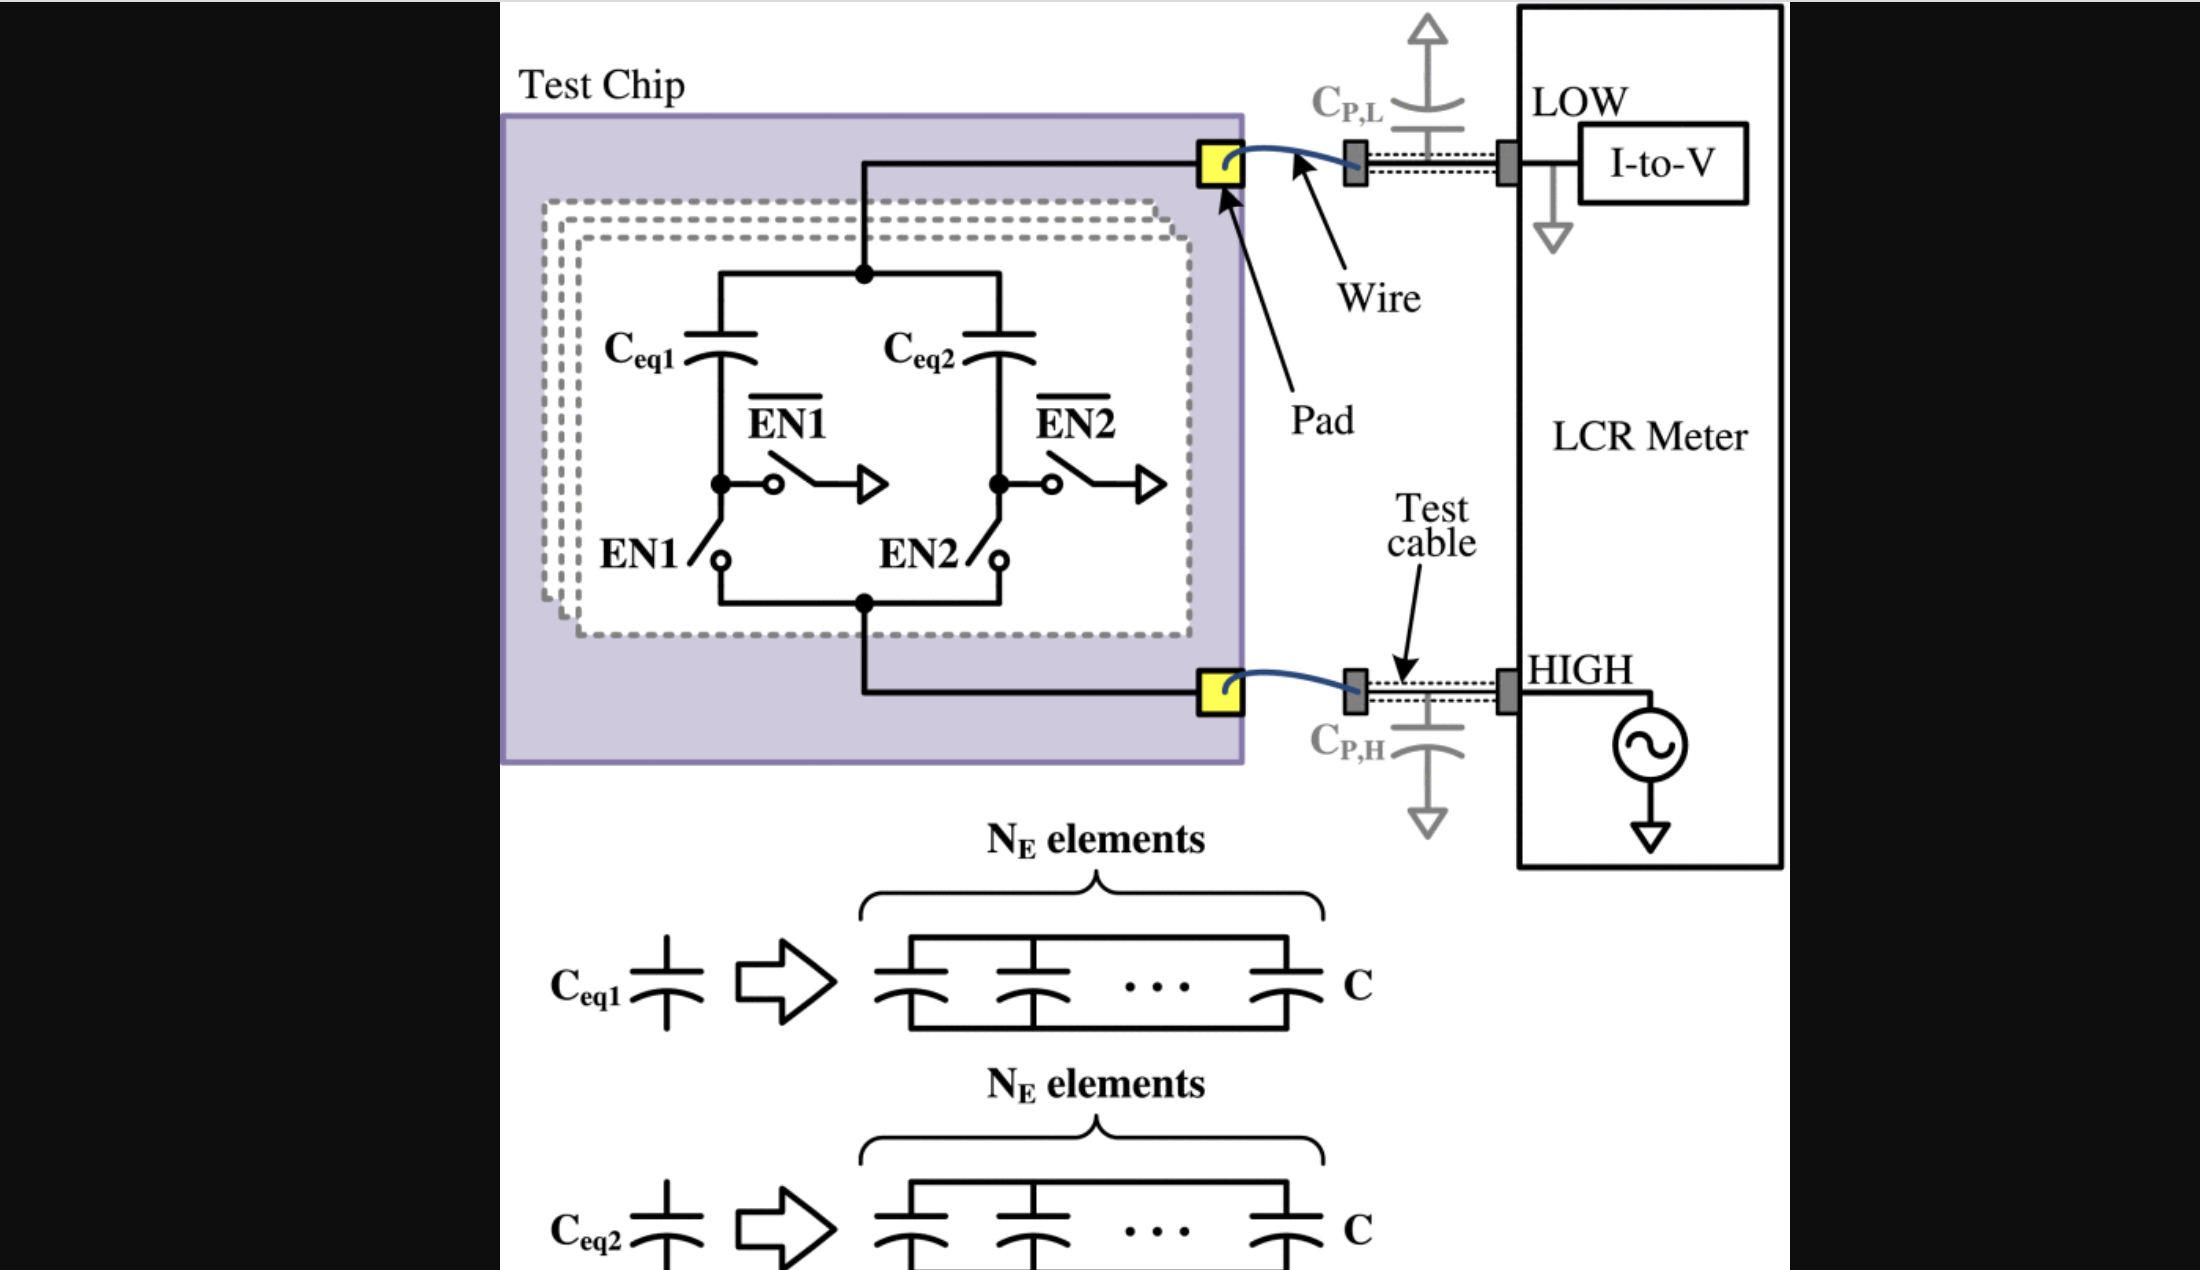 Matching properties of femtofarad and sub-femtofarad MOM capacitors